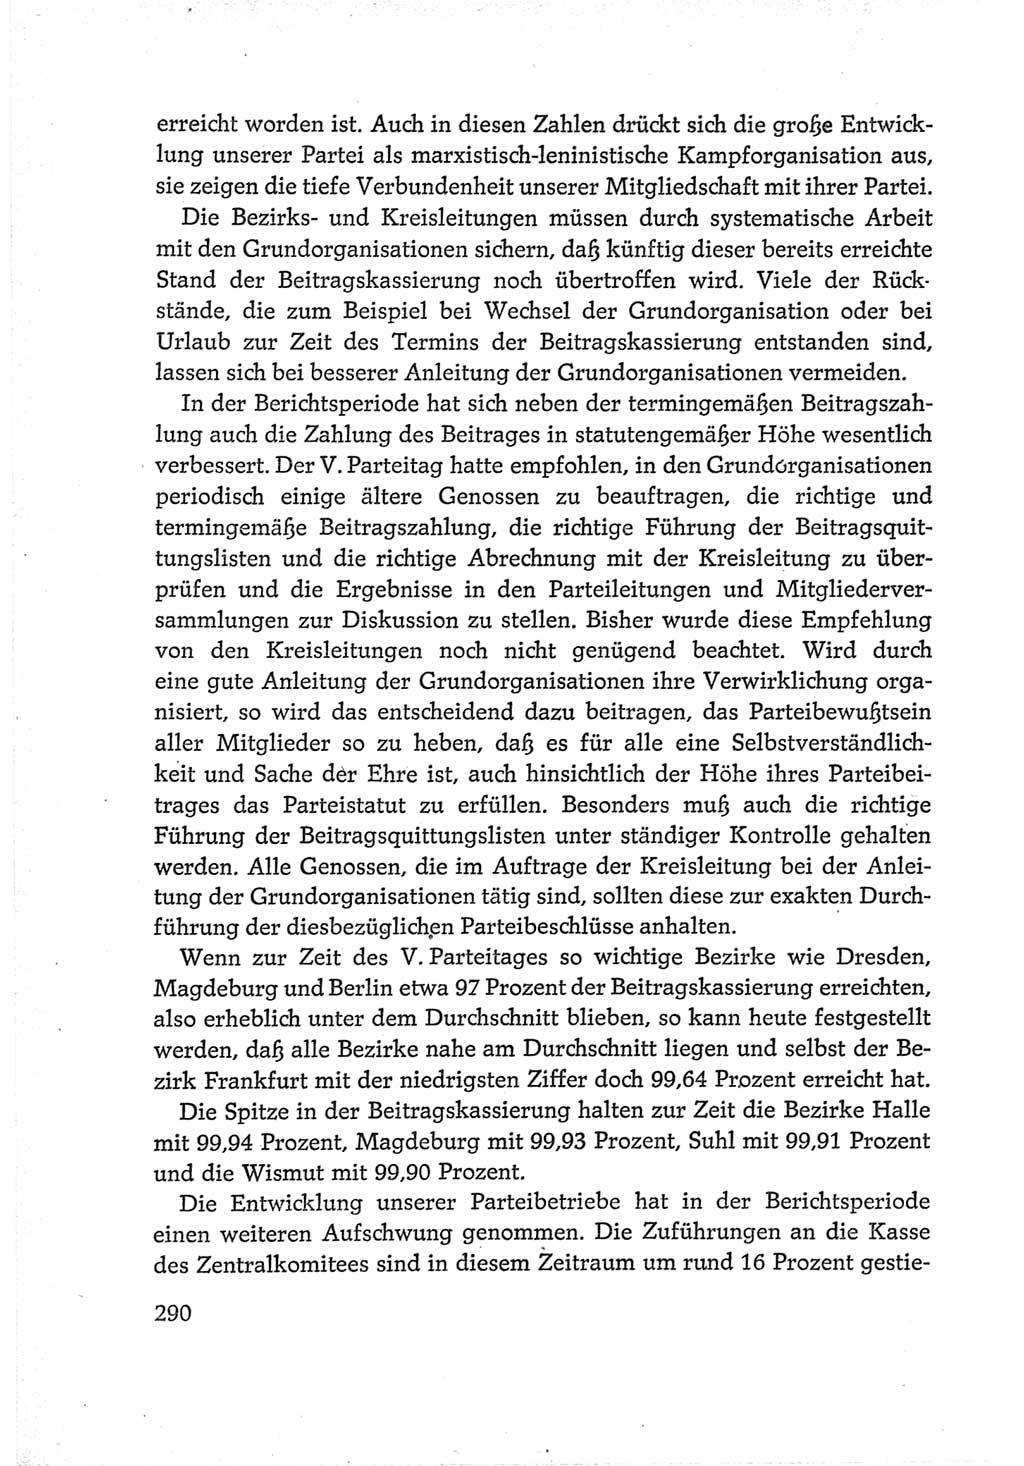 Protokoll der Verhandlungen des Ⅵ. Parteitages der Sozialistischen Einheitspartei Deutschlands (SED) [Deutsche Demokratische Republik (DDR)] 1963, Band Ⅳ, Seite 290 (Prot. Verh. Ⅵ. PT SED DDR 1963, Bd. Ⅳ, S. 290)